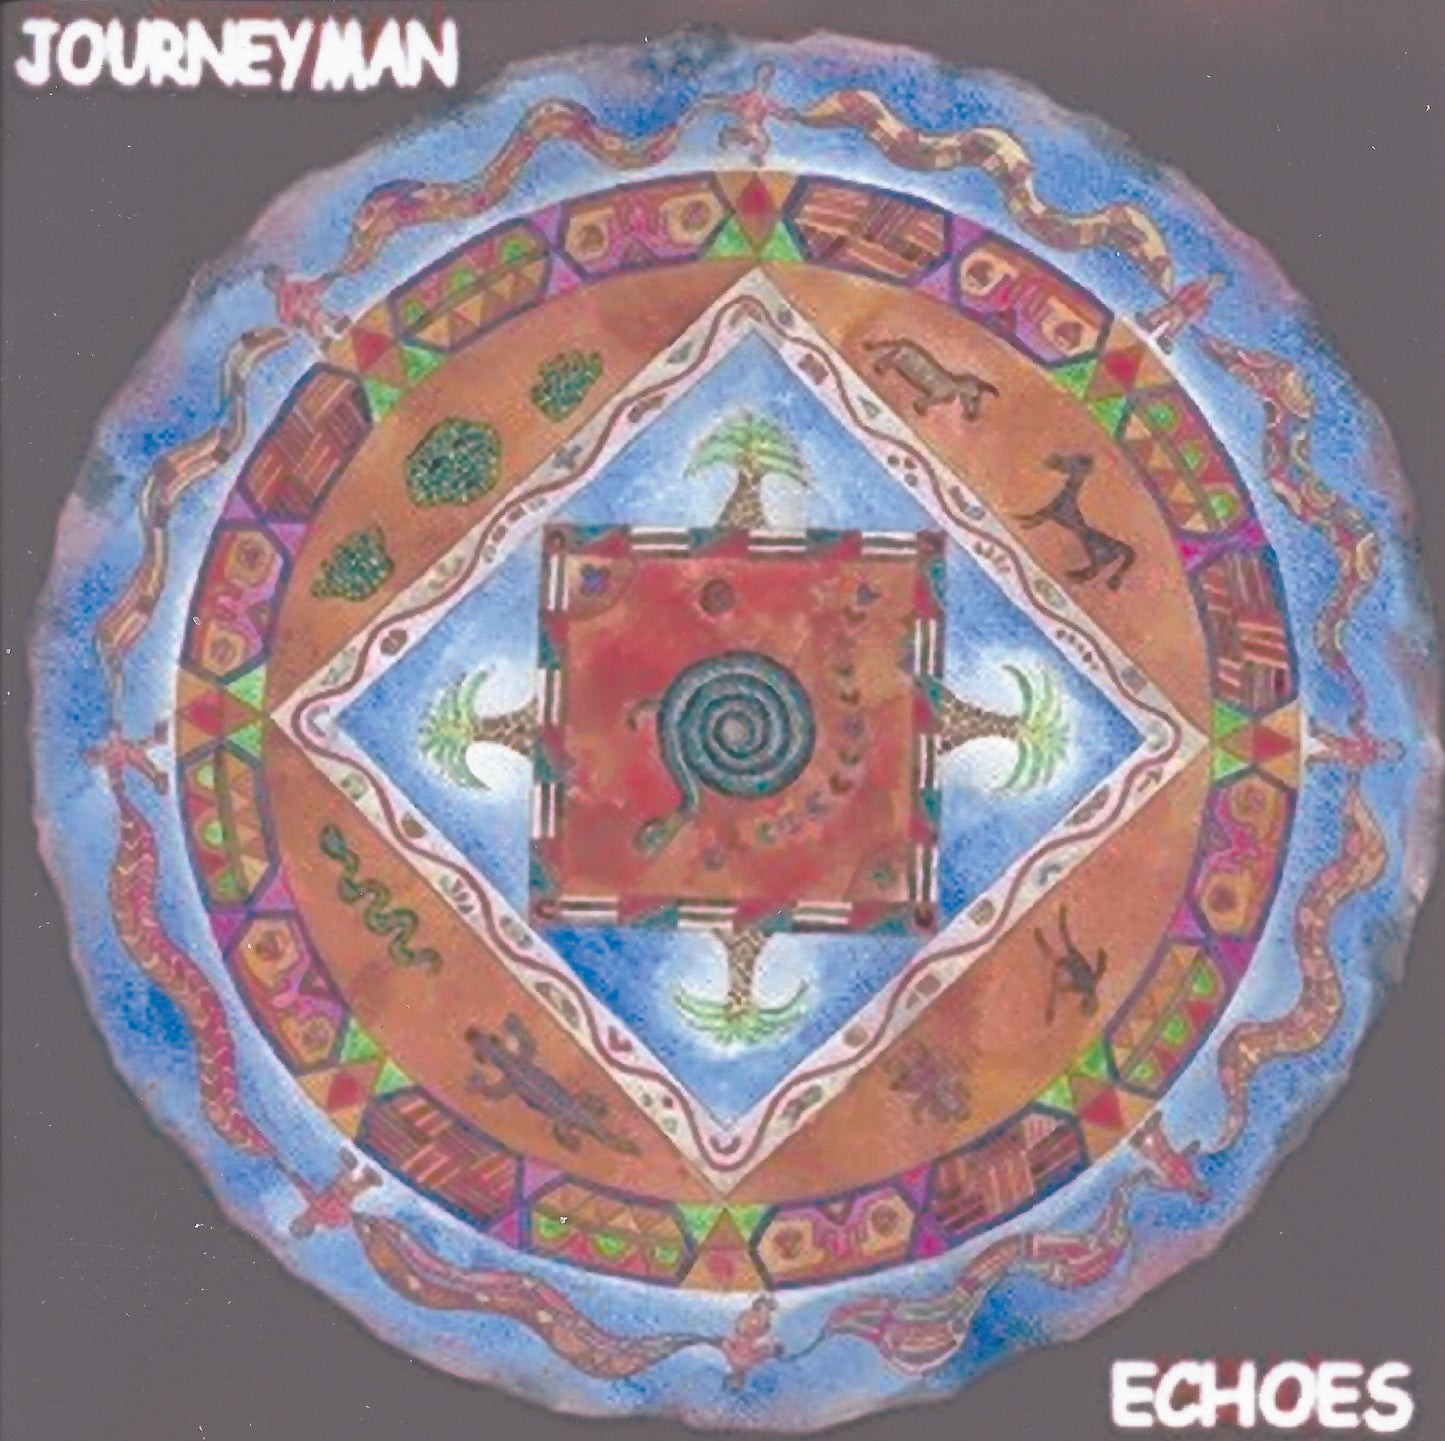 Sunrise - Journeyman